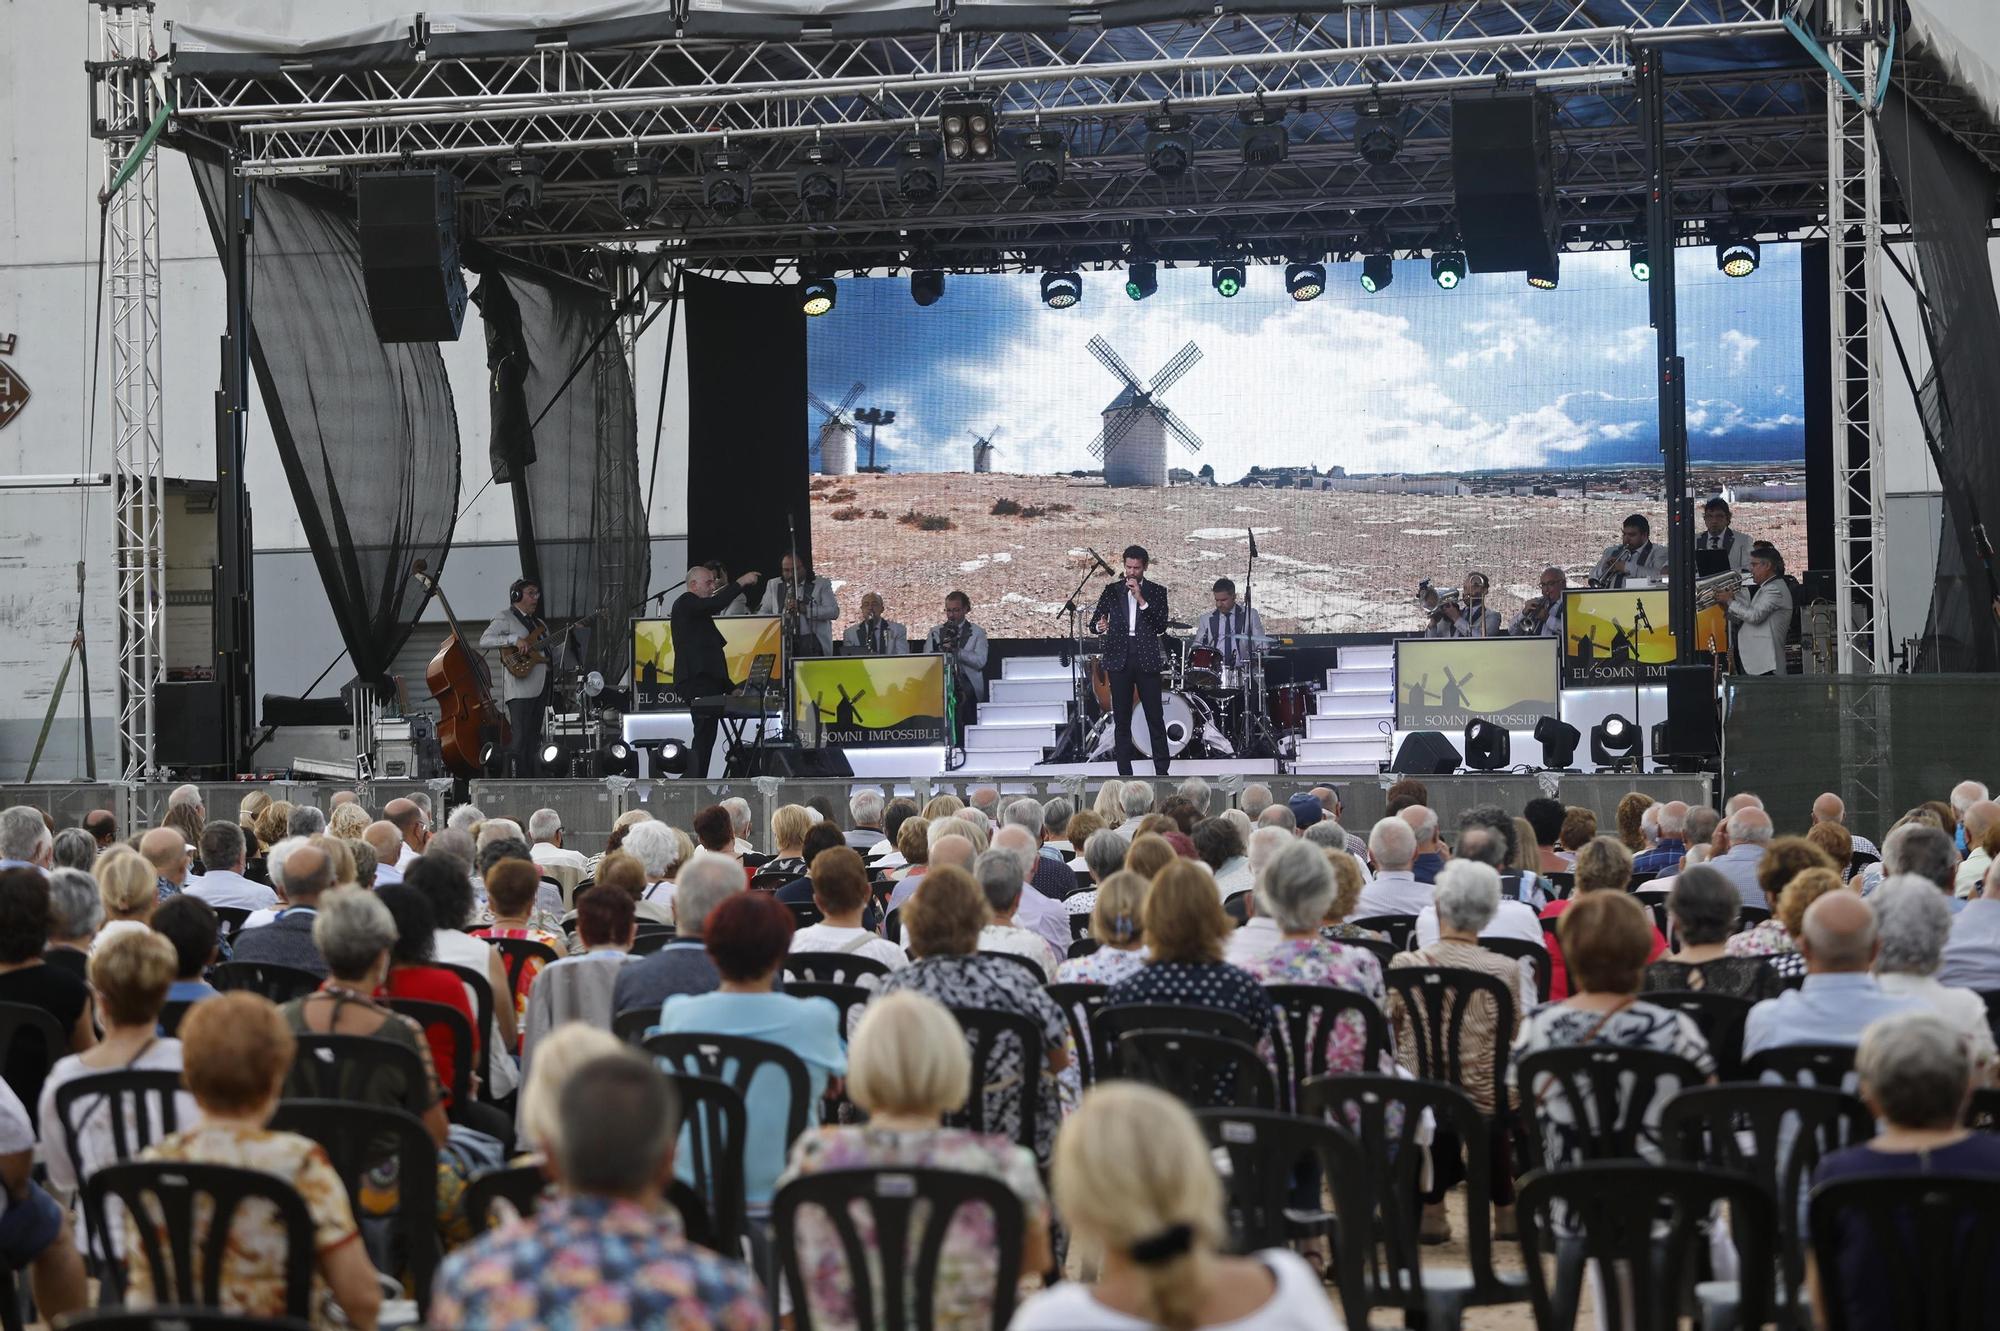 L’Orquestra Selvatana tanca el cap de setmana de Festa Major a Sarrià de Ter